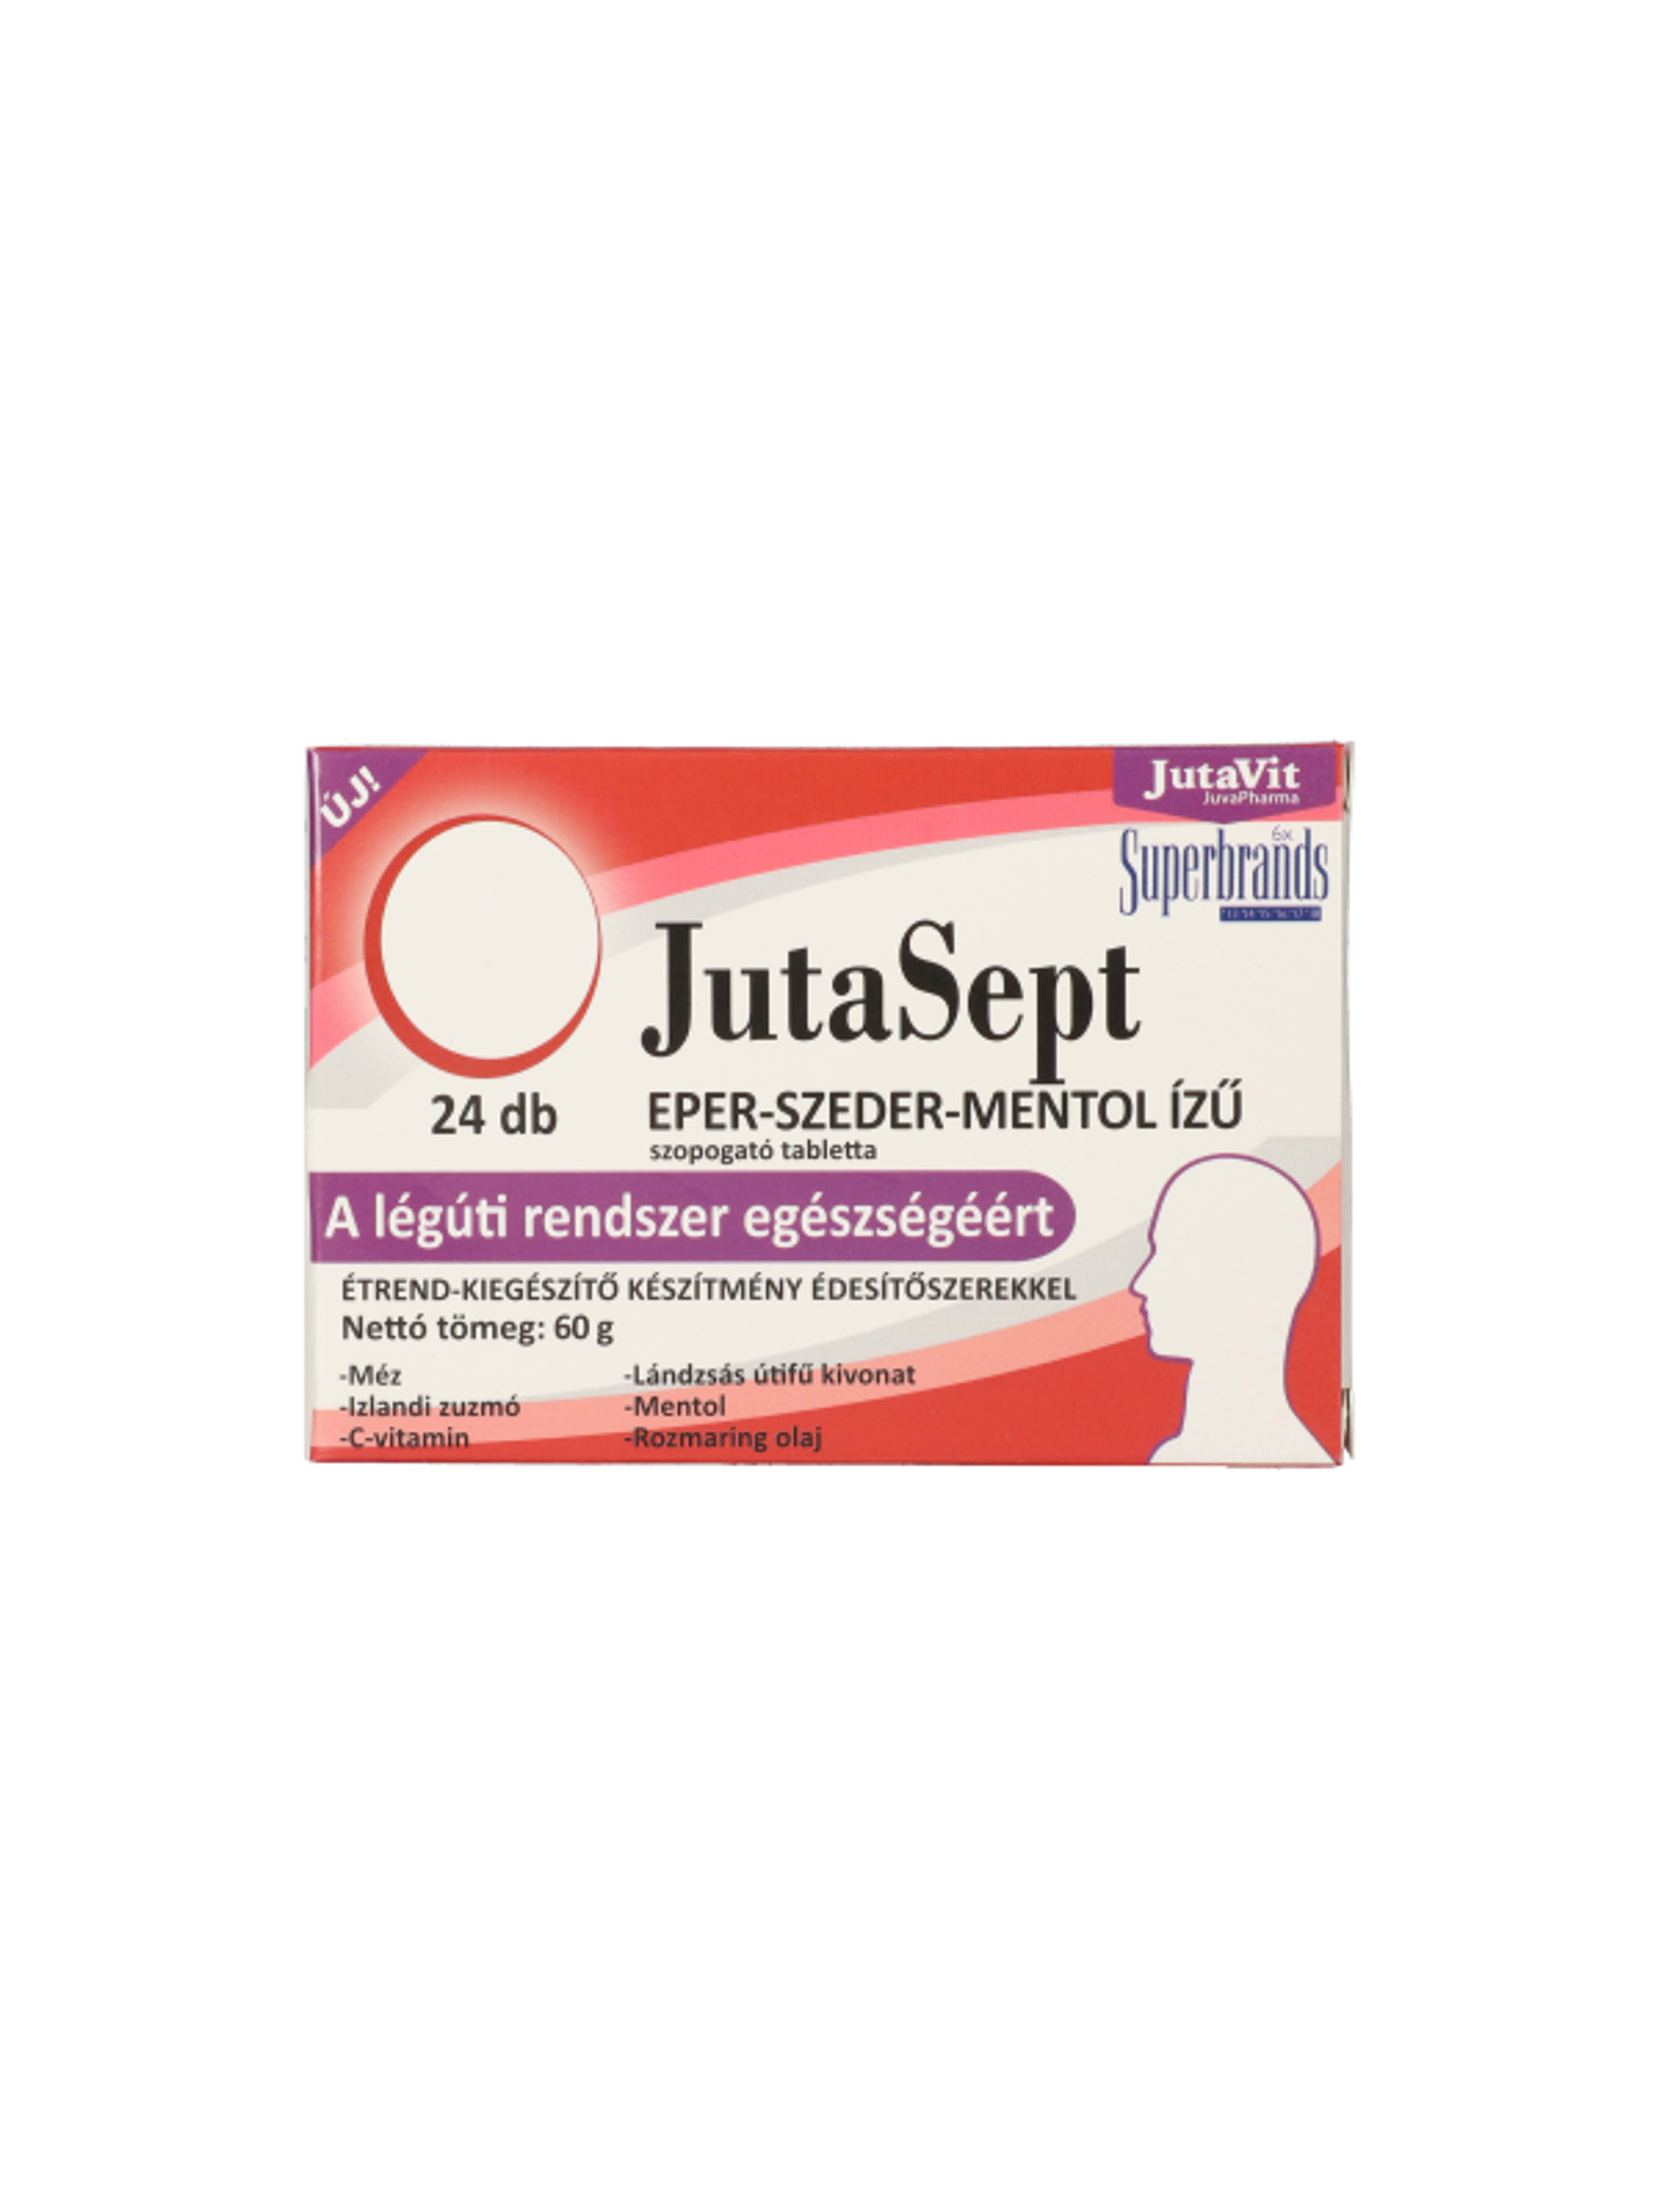 JutaVit Jutasept szopogató tabletta, eper-szeder-mentol ízű - 24 db